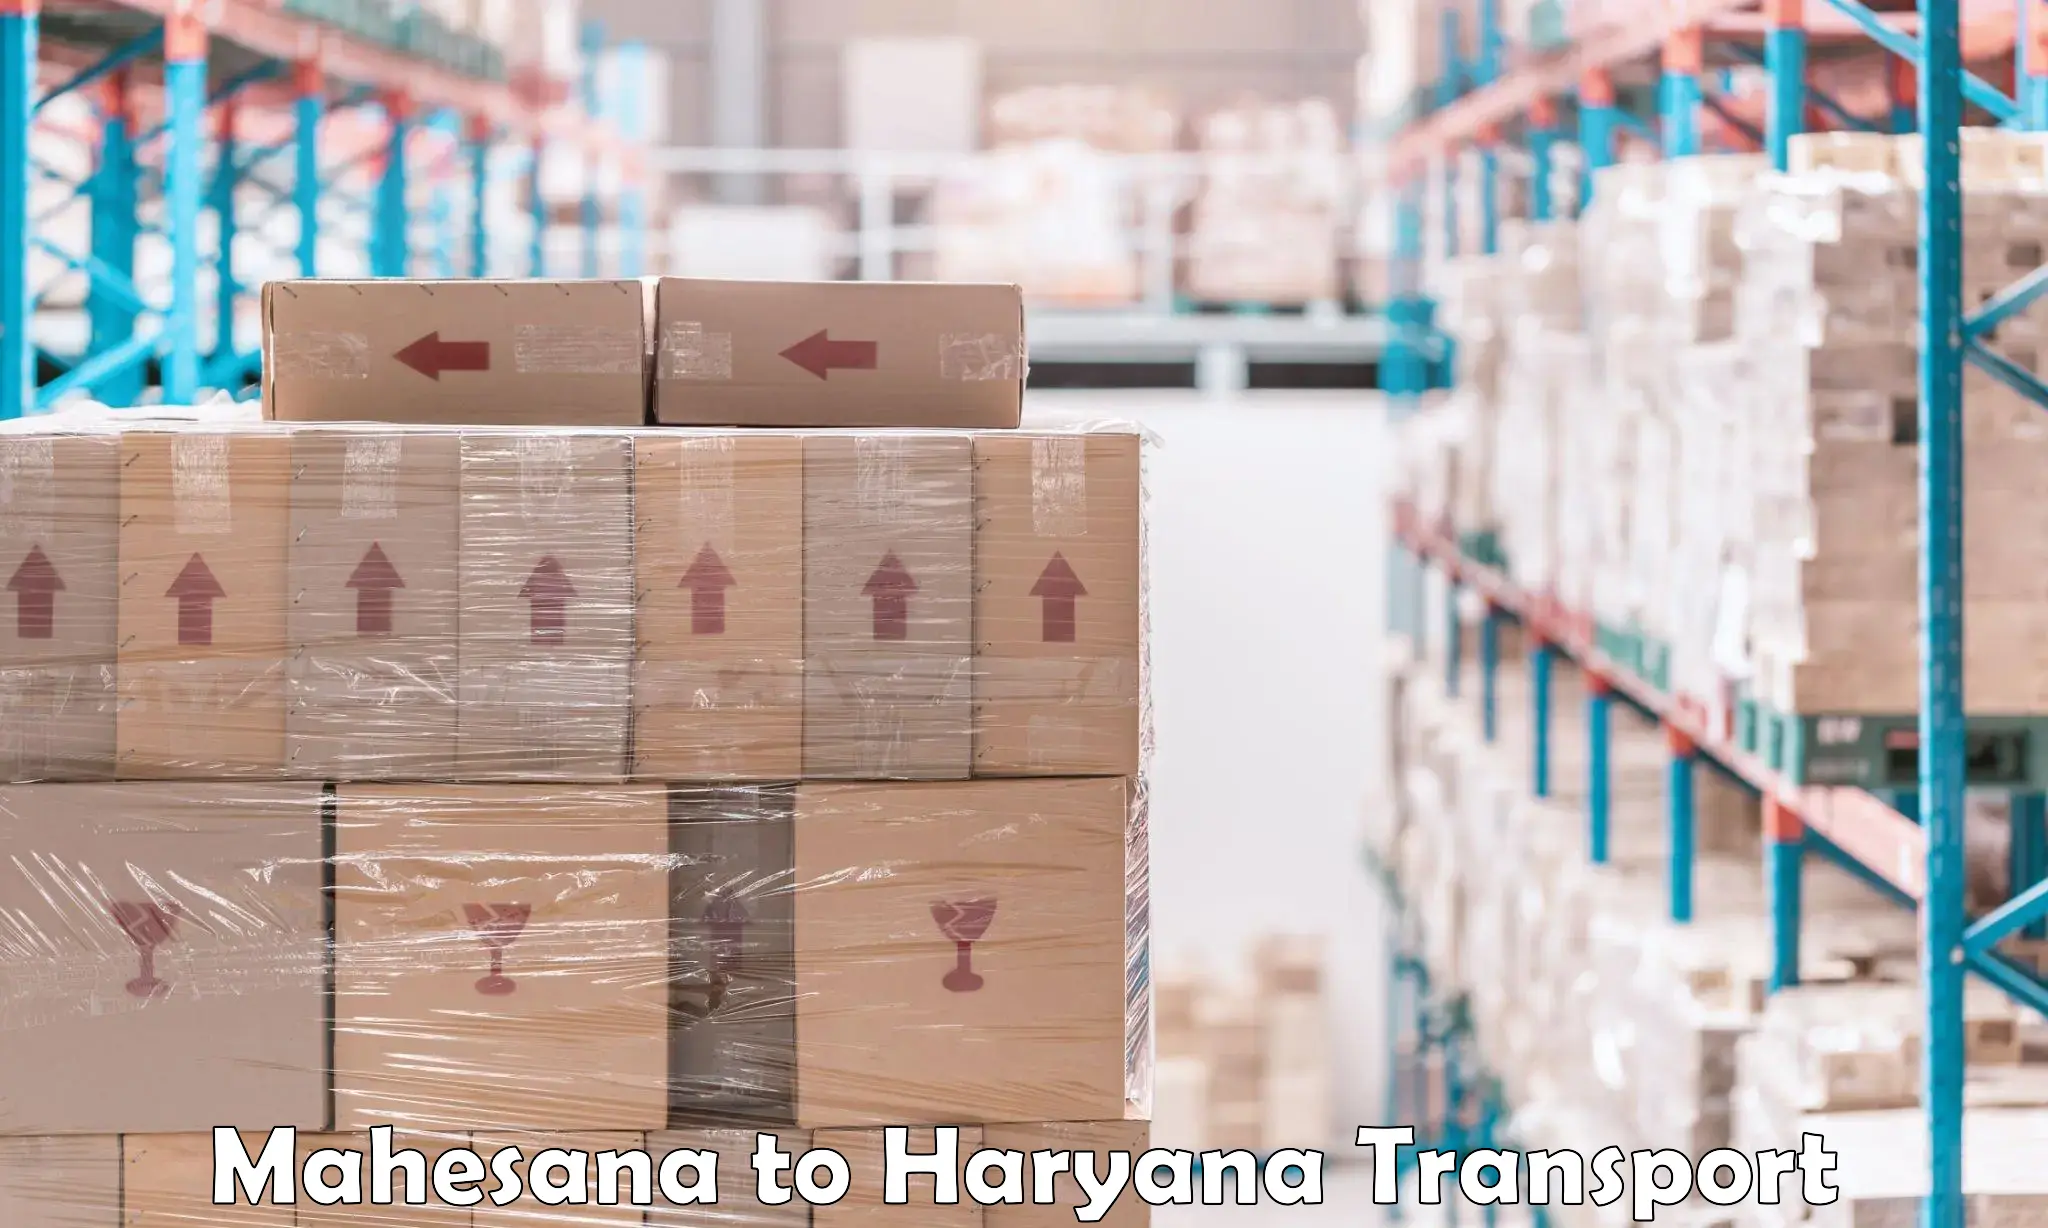 Nearest transport service Mahesana to Haryana